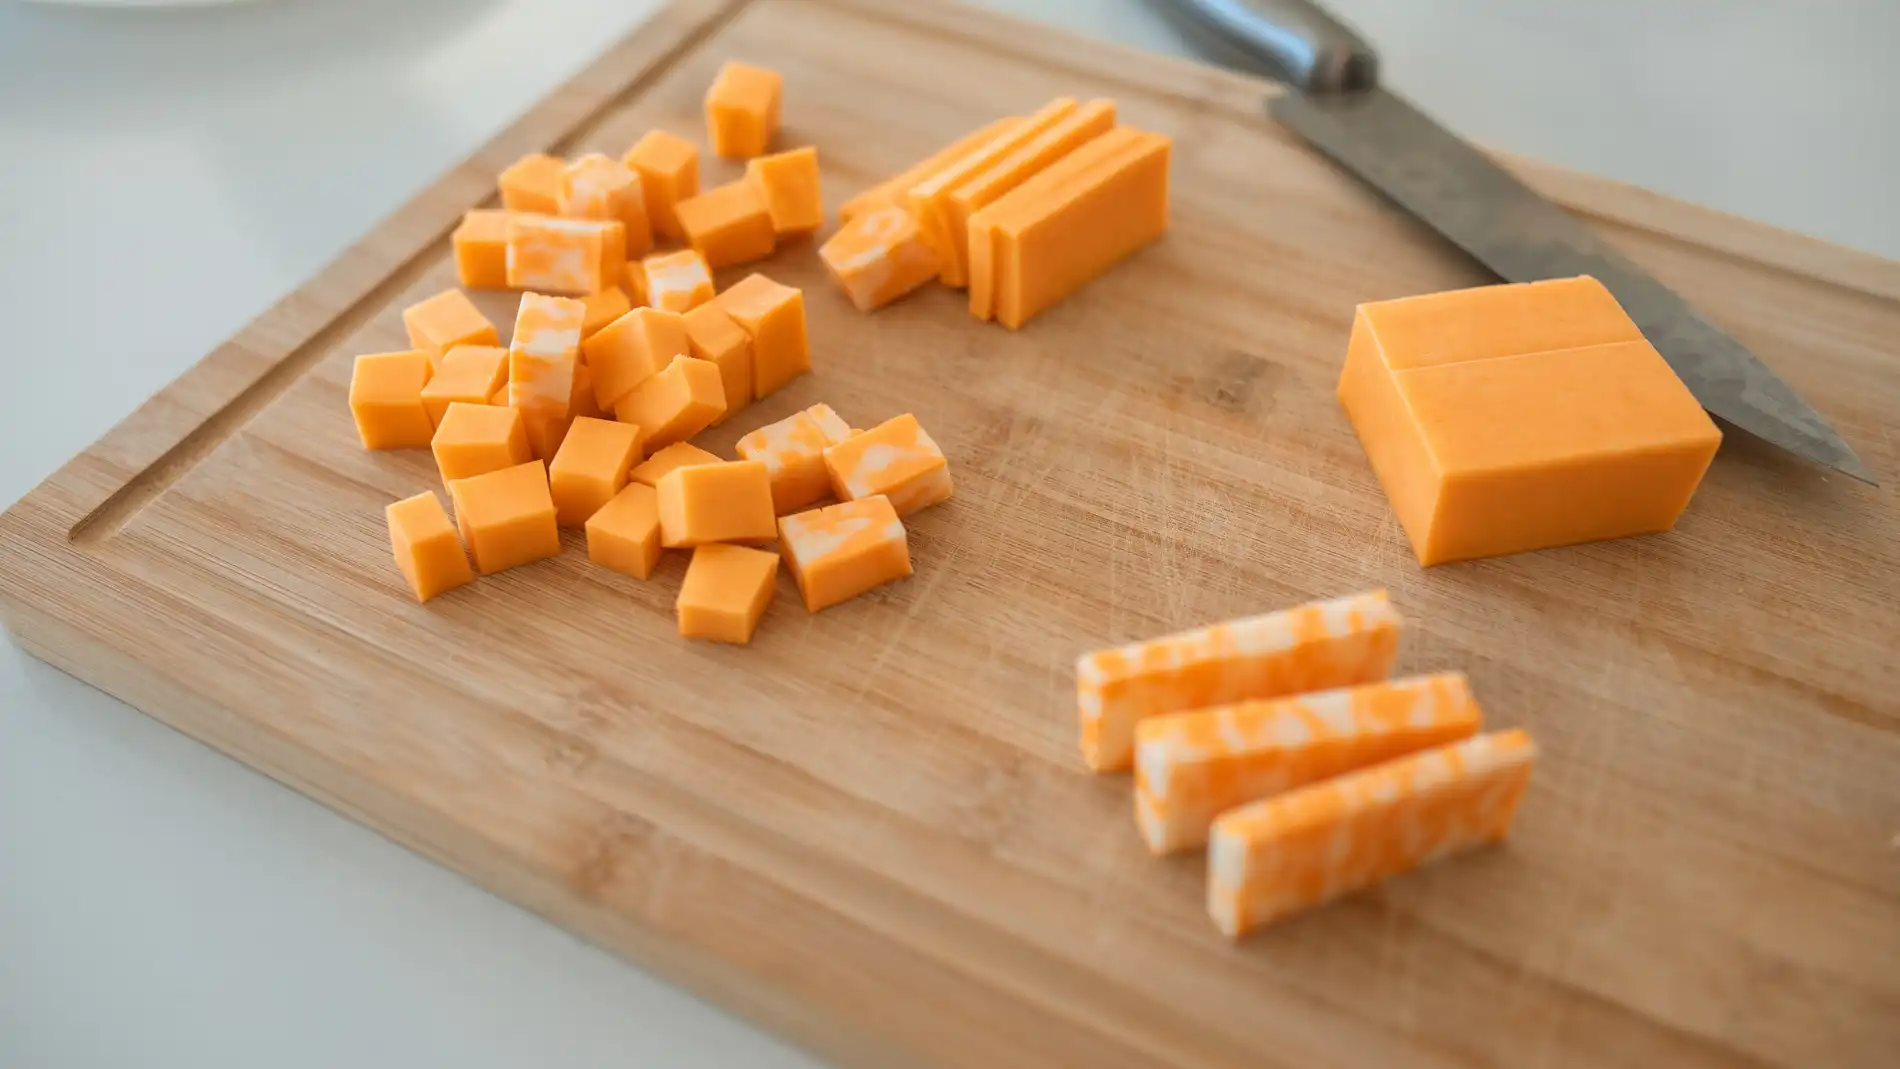 Cuchillo, tabla y tacos de queso